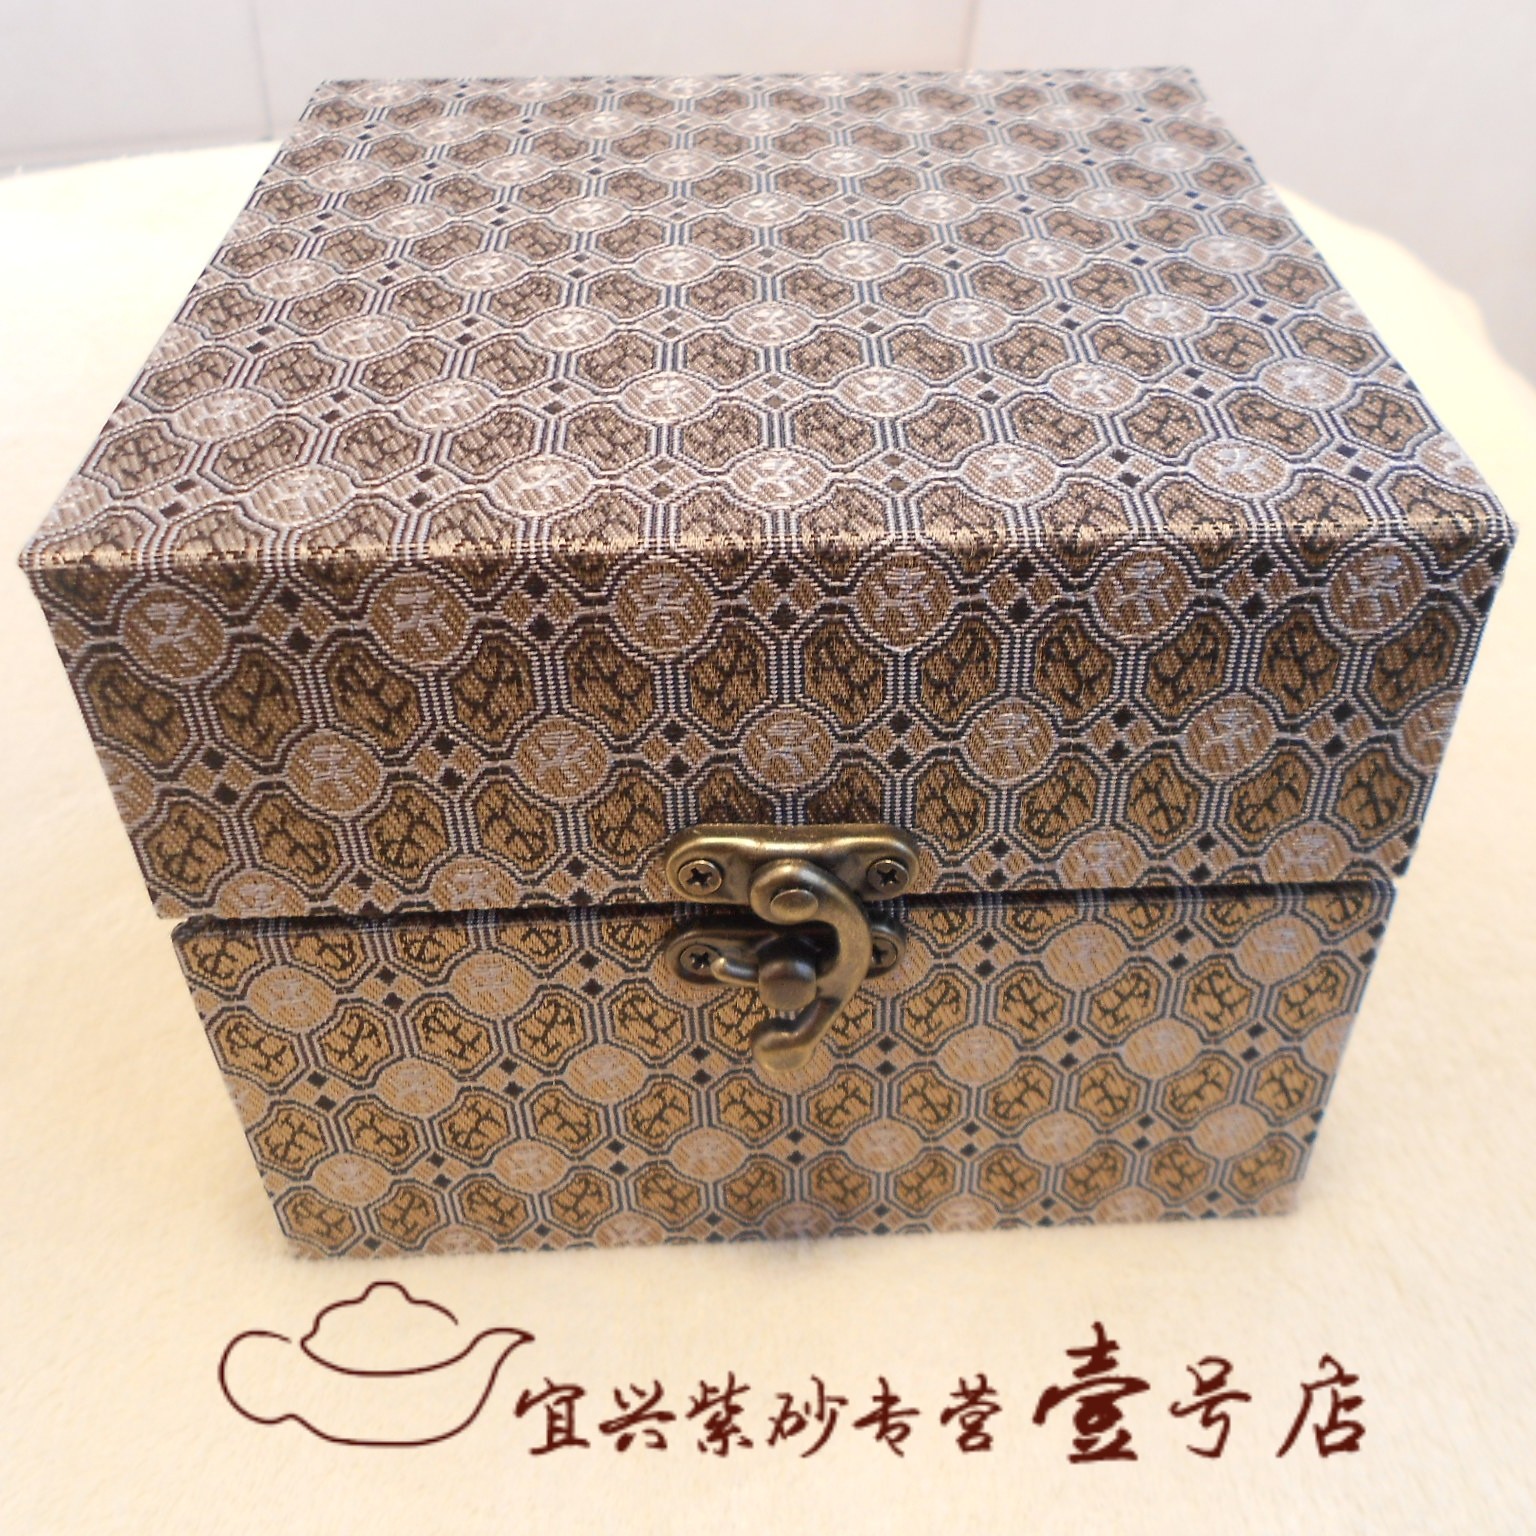 高档锦盒 铜锁扣锦盒 紫砂壶锦盒 收纳盒 收藏盒 古典锦盒